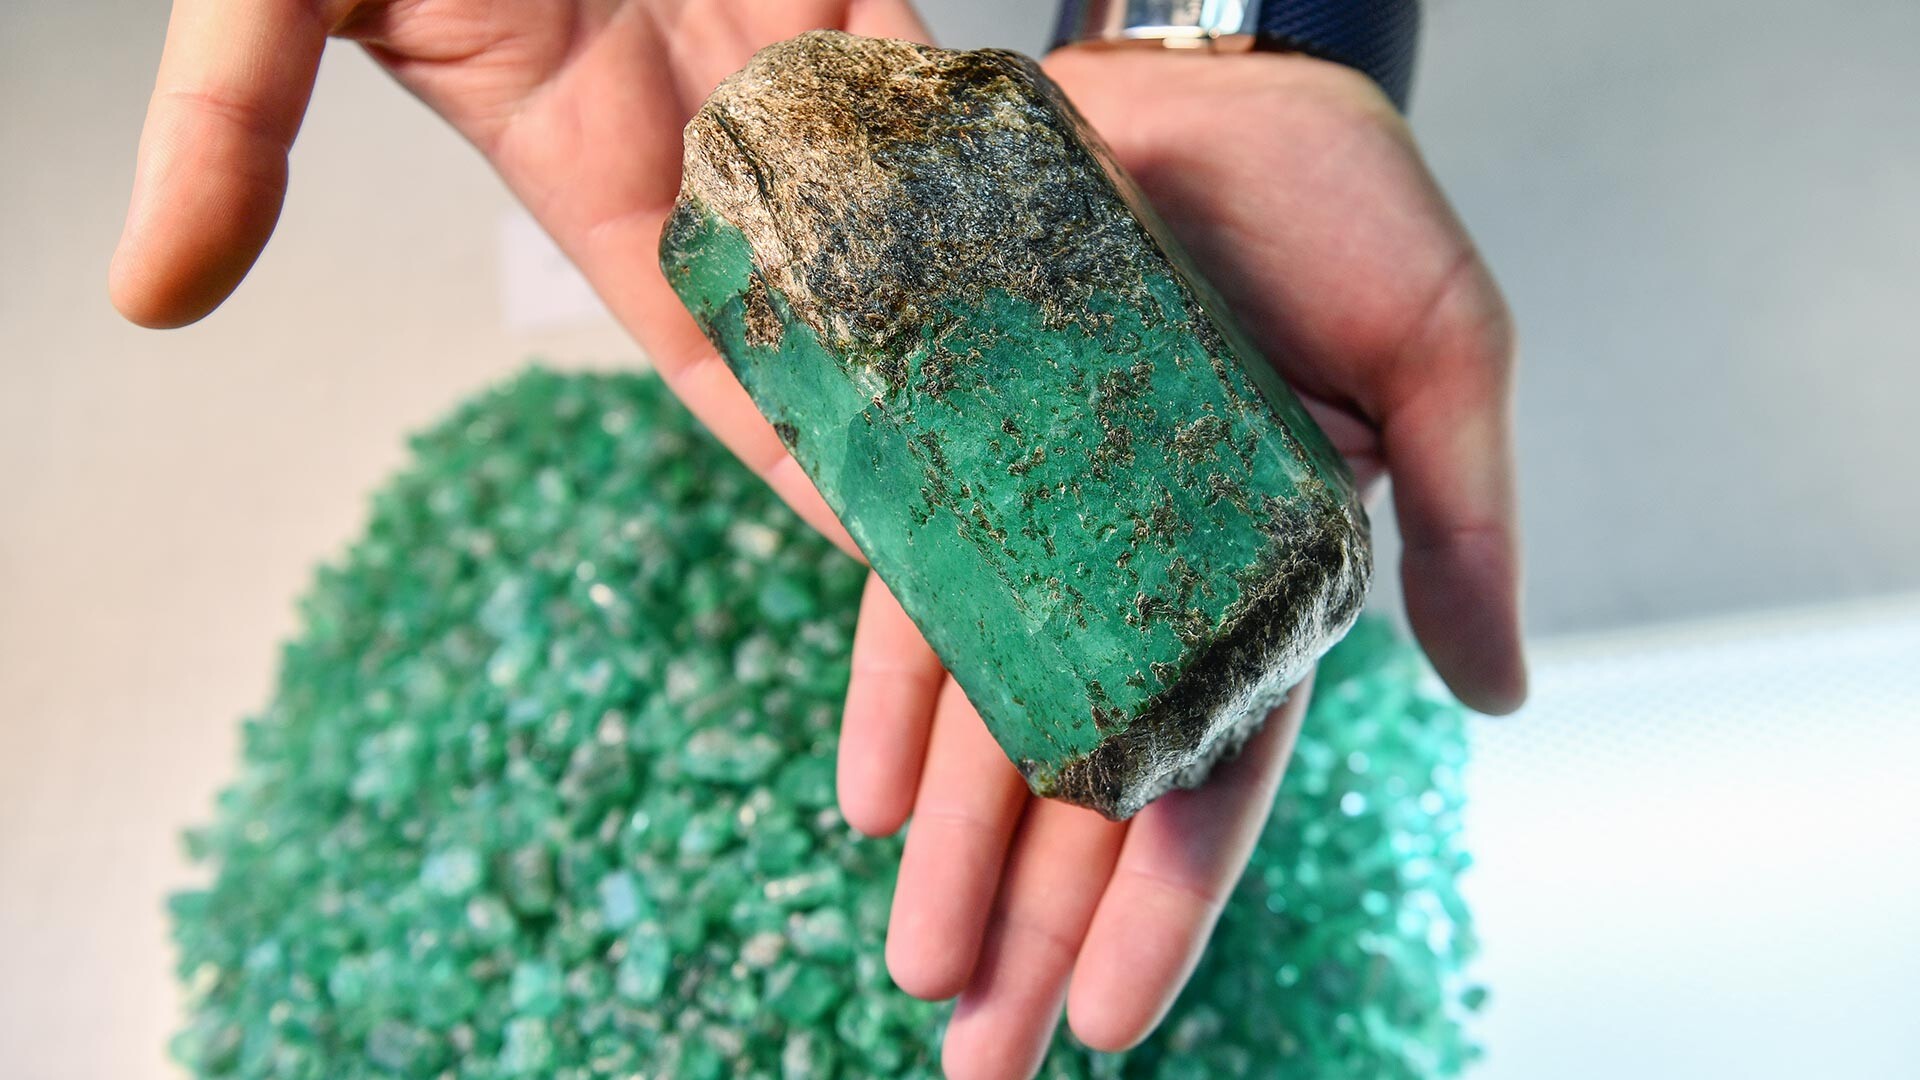 Pierres vertes : quelles sont les pierres semi-précieuses, naturelles de  couleur verte ?